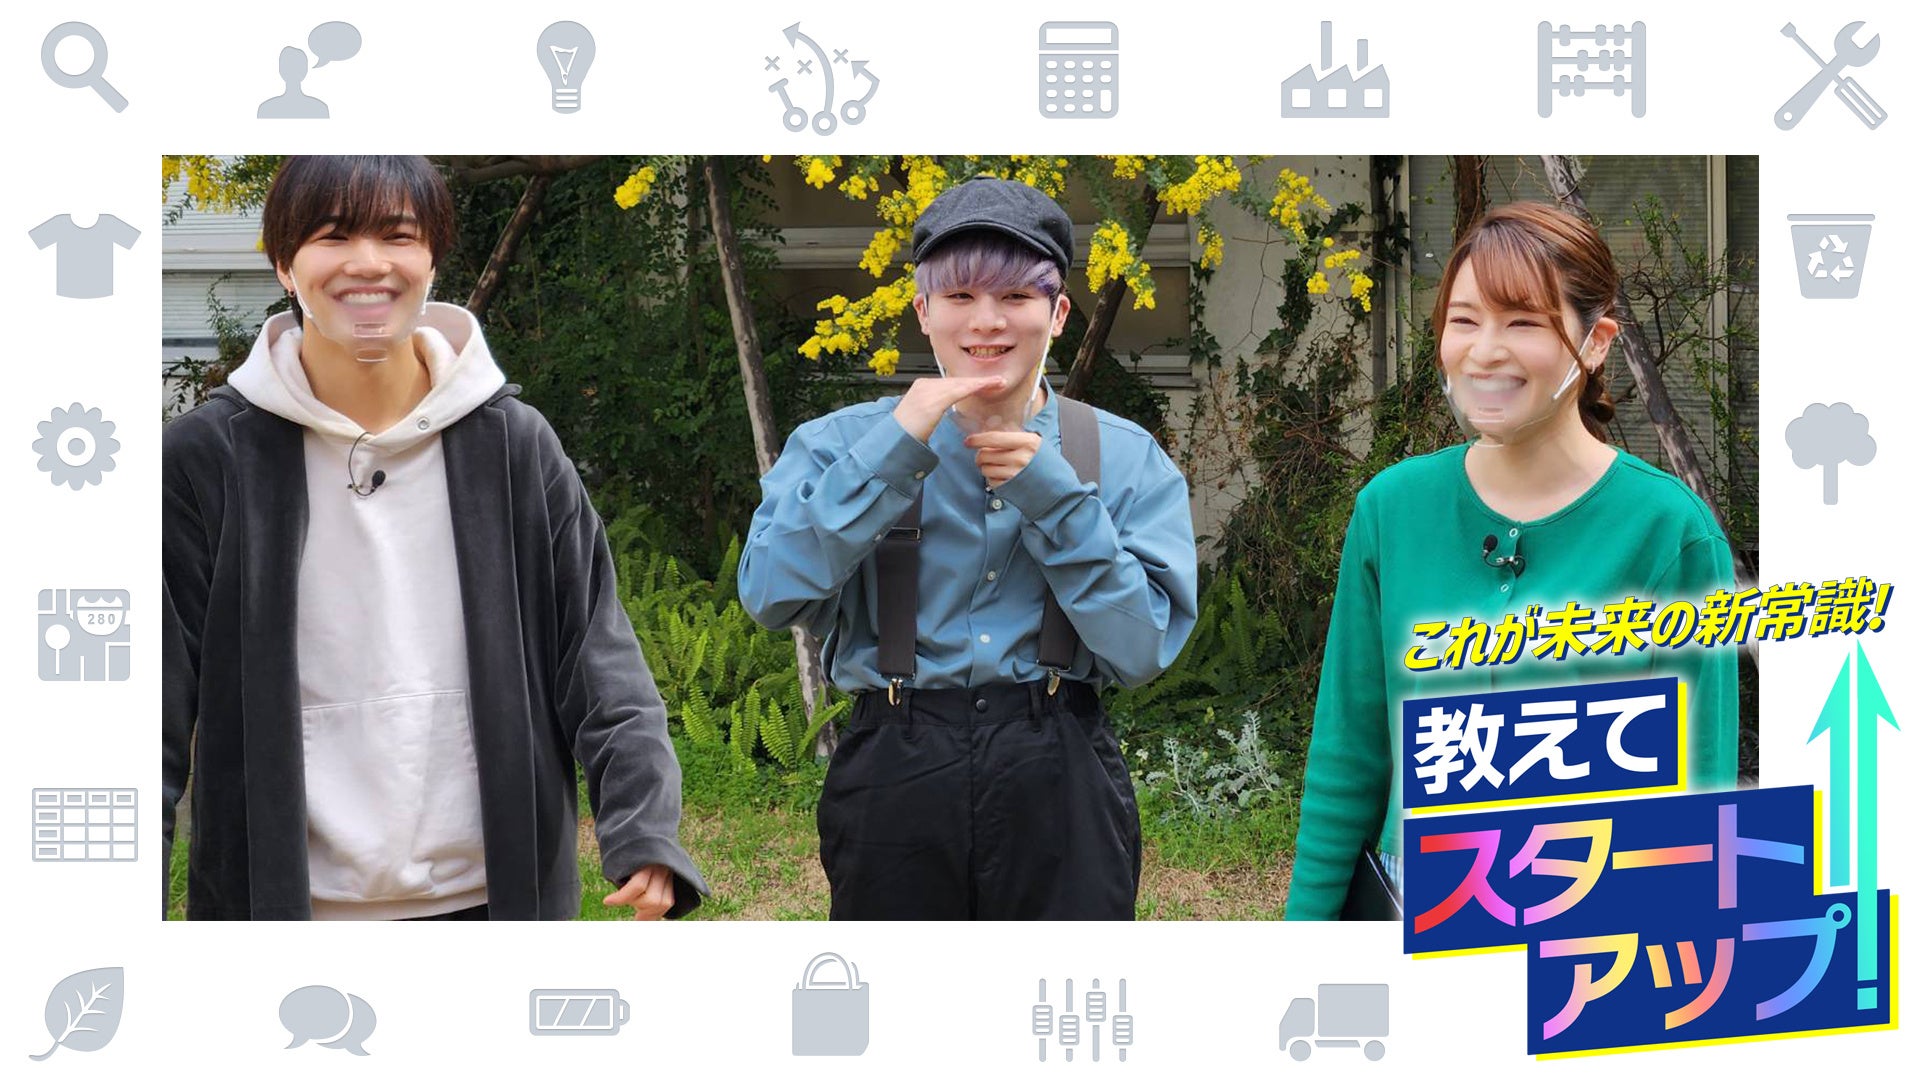 SDGs音楽劇「パパへの子守歌〜幸せのカケラ〜」、3月18日・19日に大阪で再演初日の3月18日限定で、SDGs落語「森のくまさん、すたこらさっさ」を上演